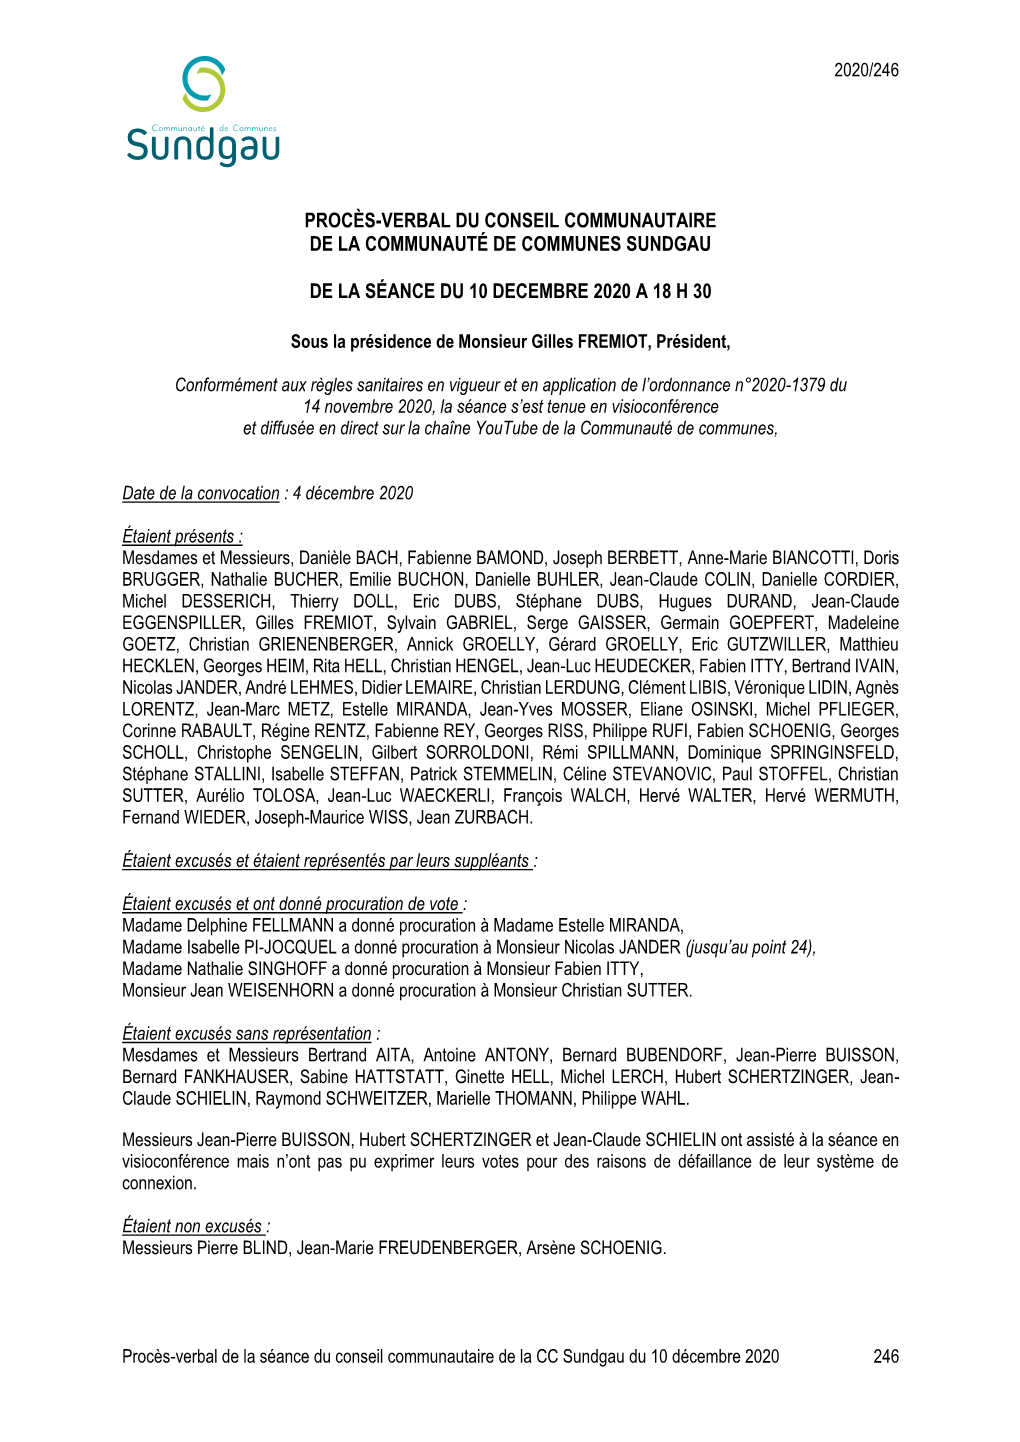 Procès-Verbal Du Conseil Communautaire De La Communauté De Communes Sundgau De La Séance Du 10 Decembre 2020 a 18 H 30